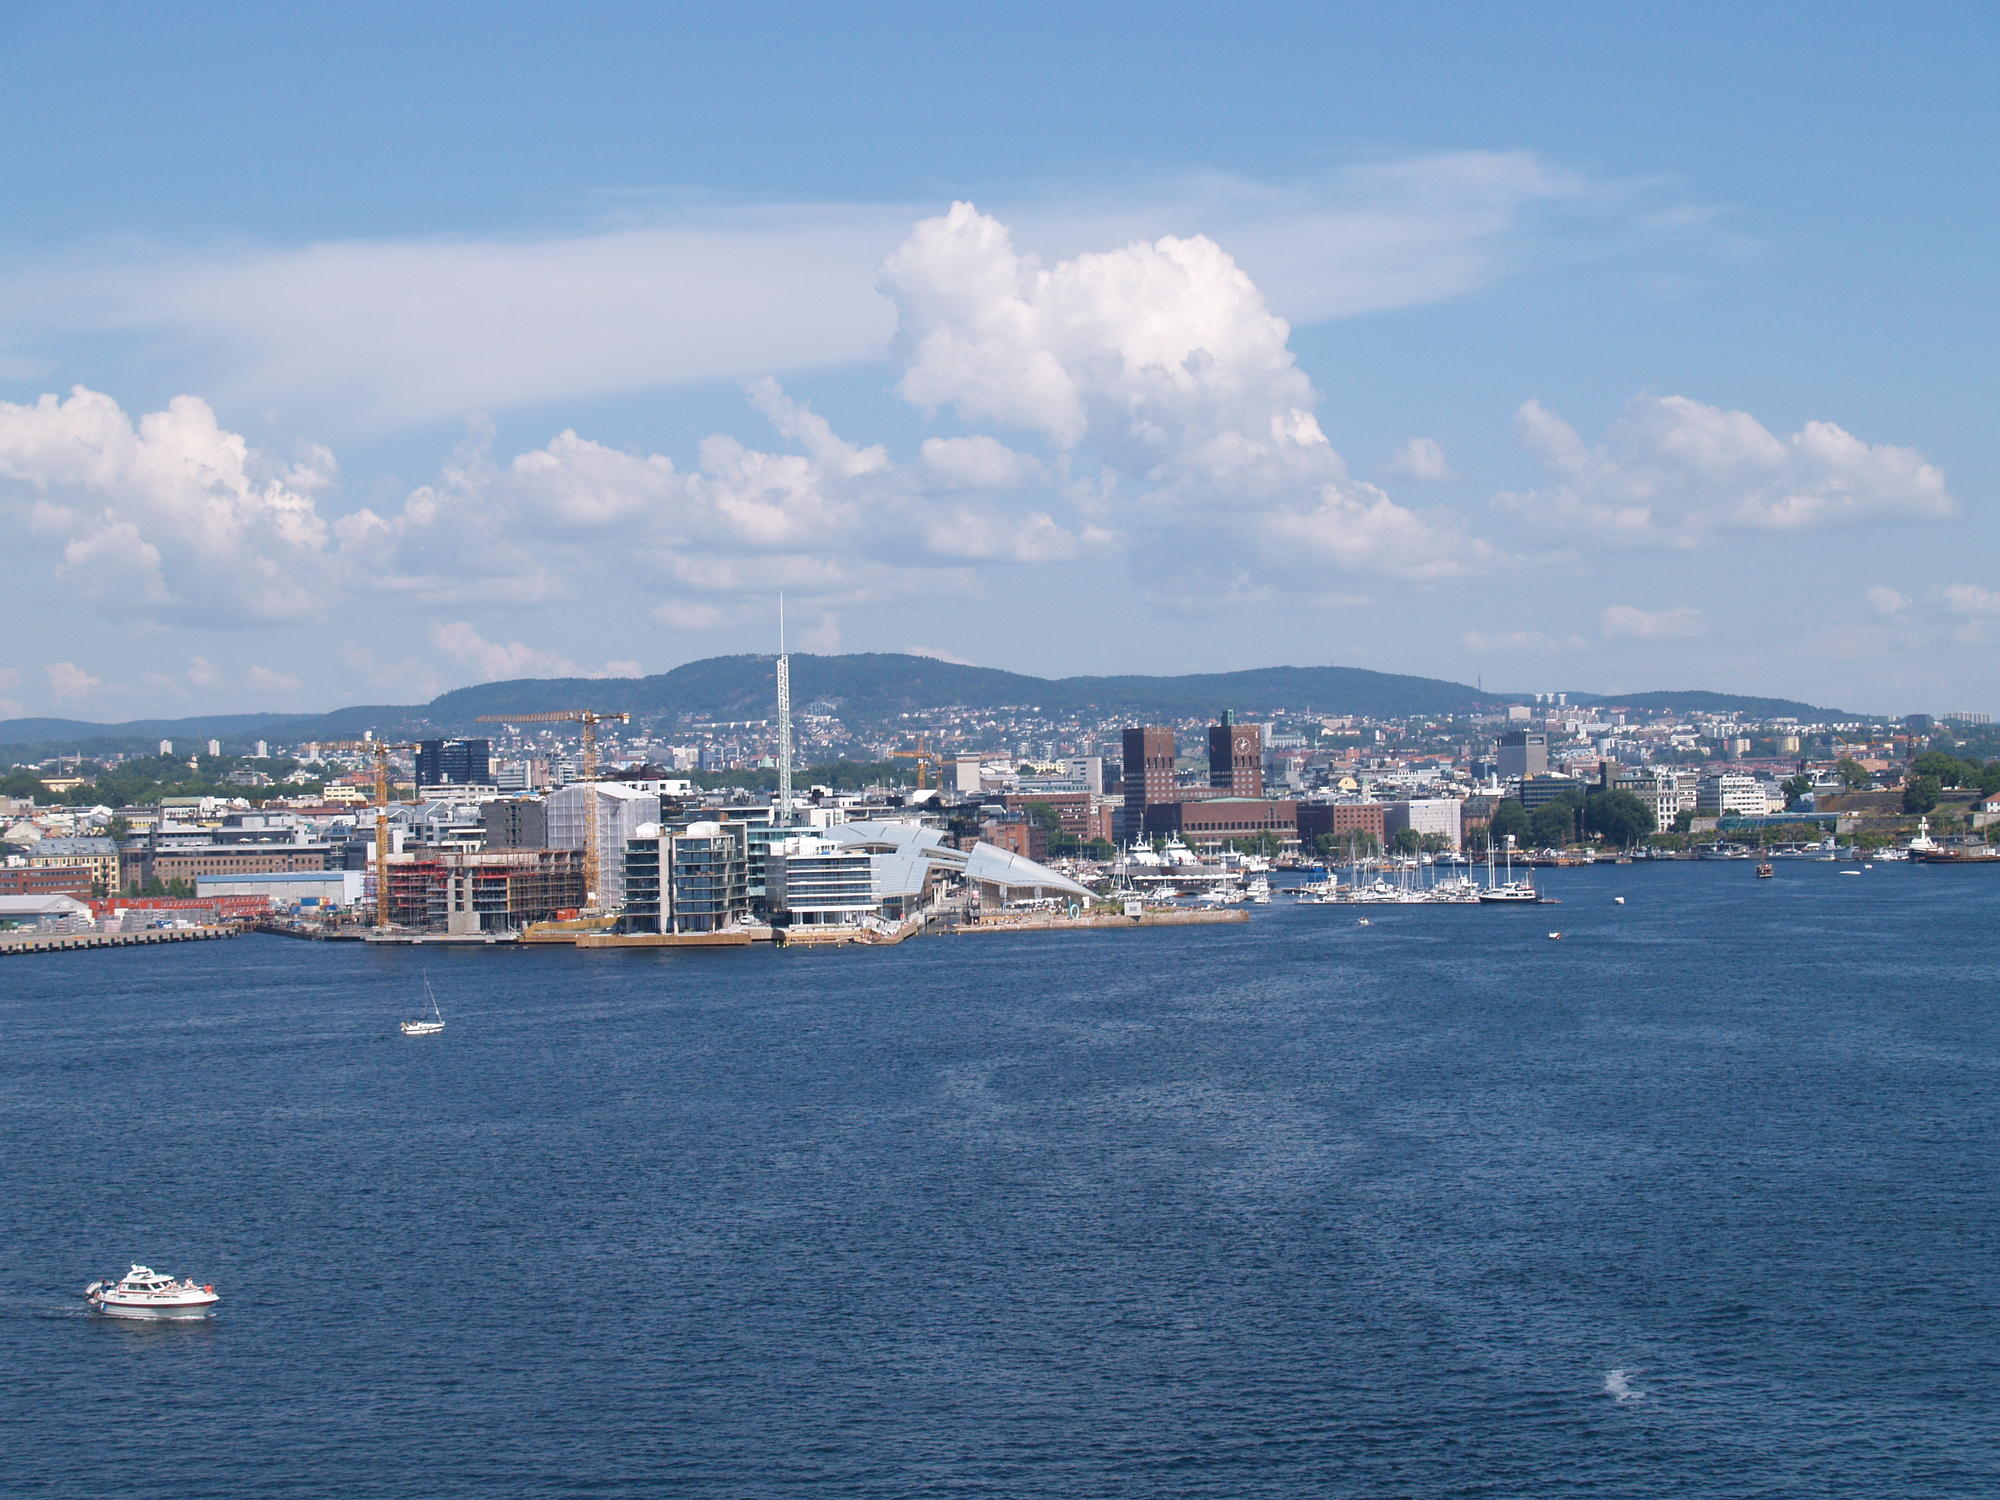 Blick auf Oslo vom Fjord aus gesehen